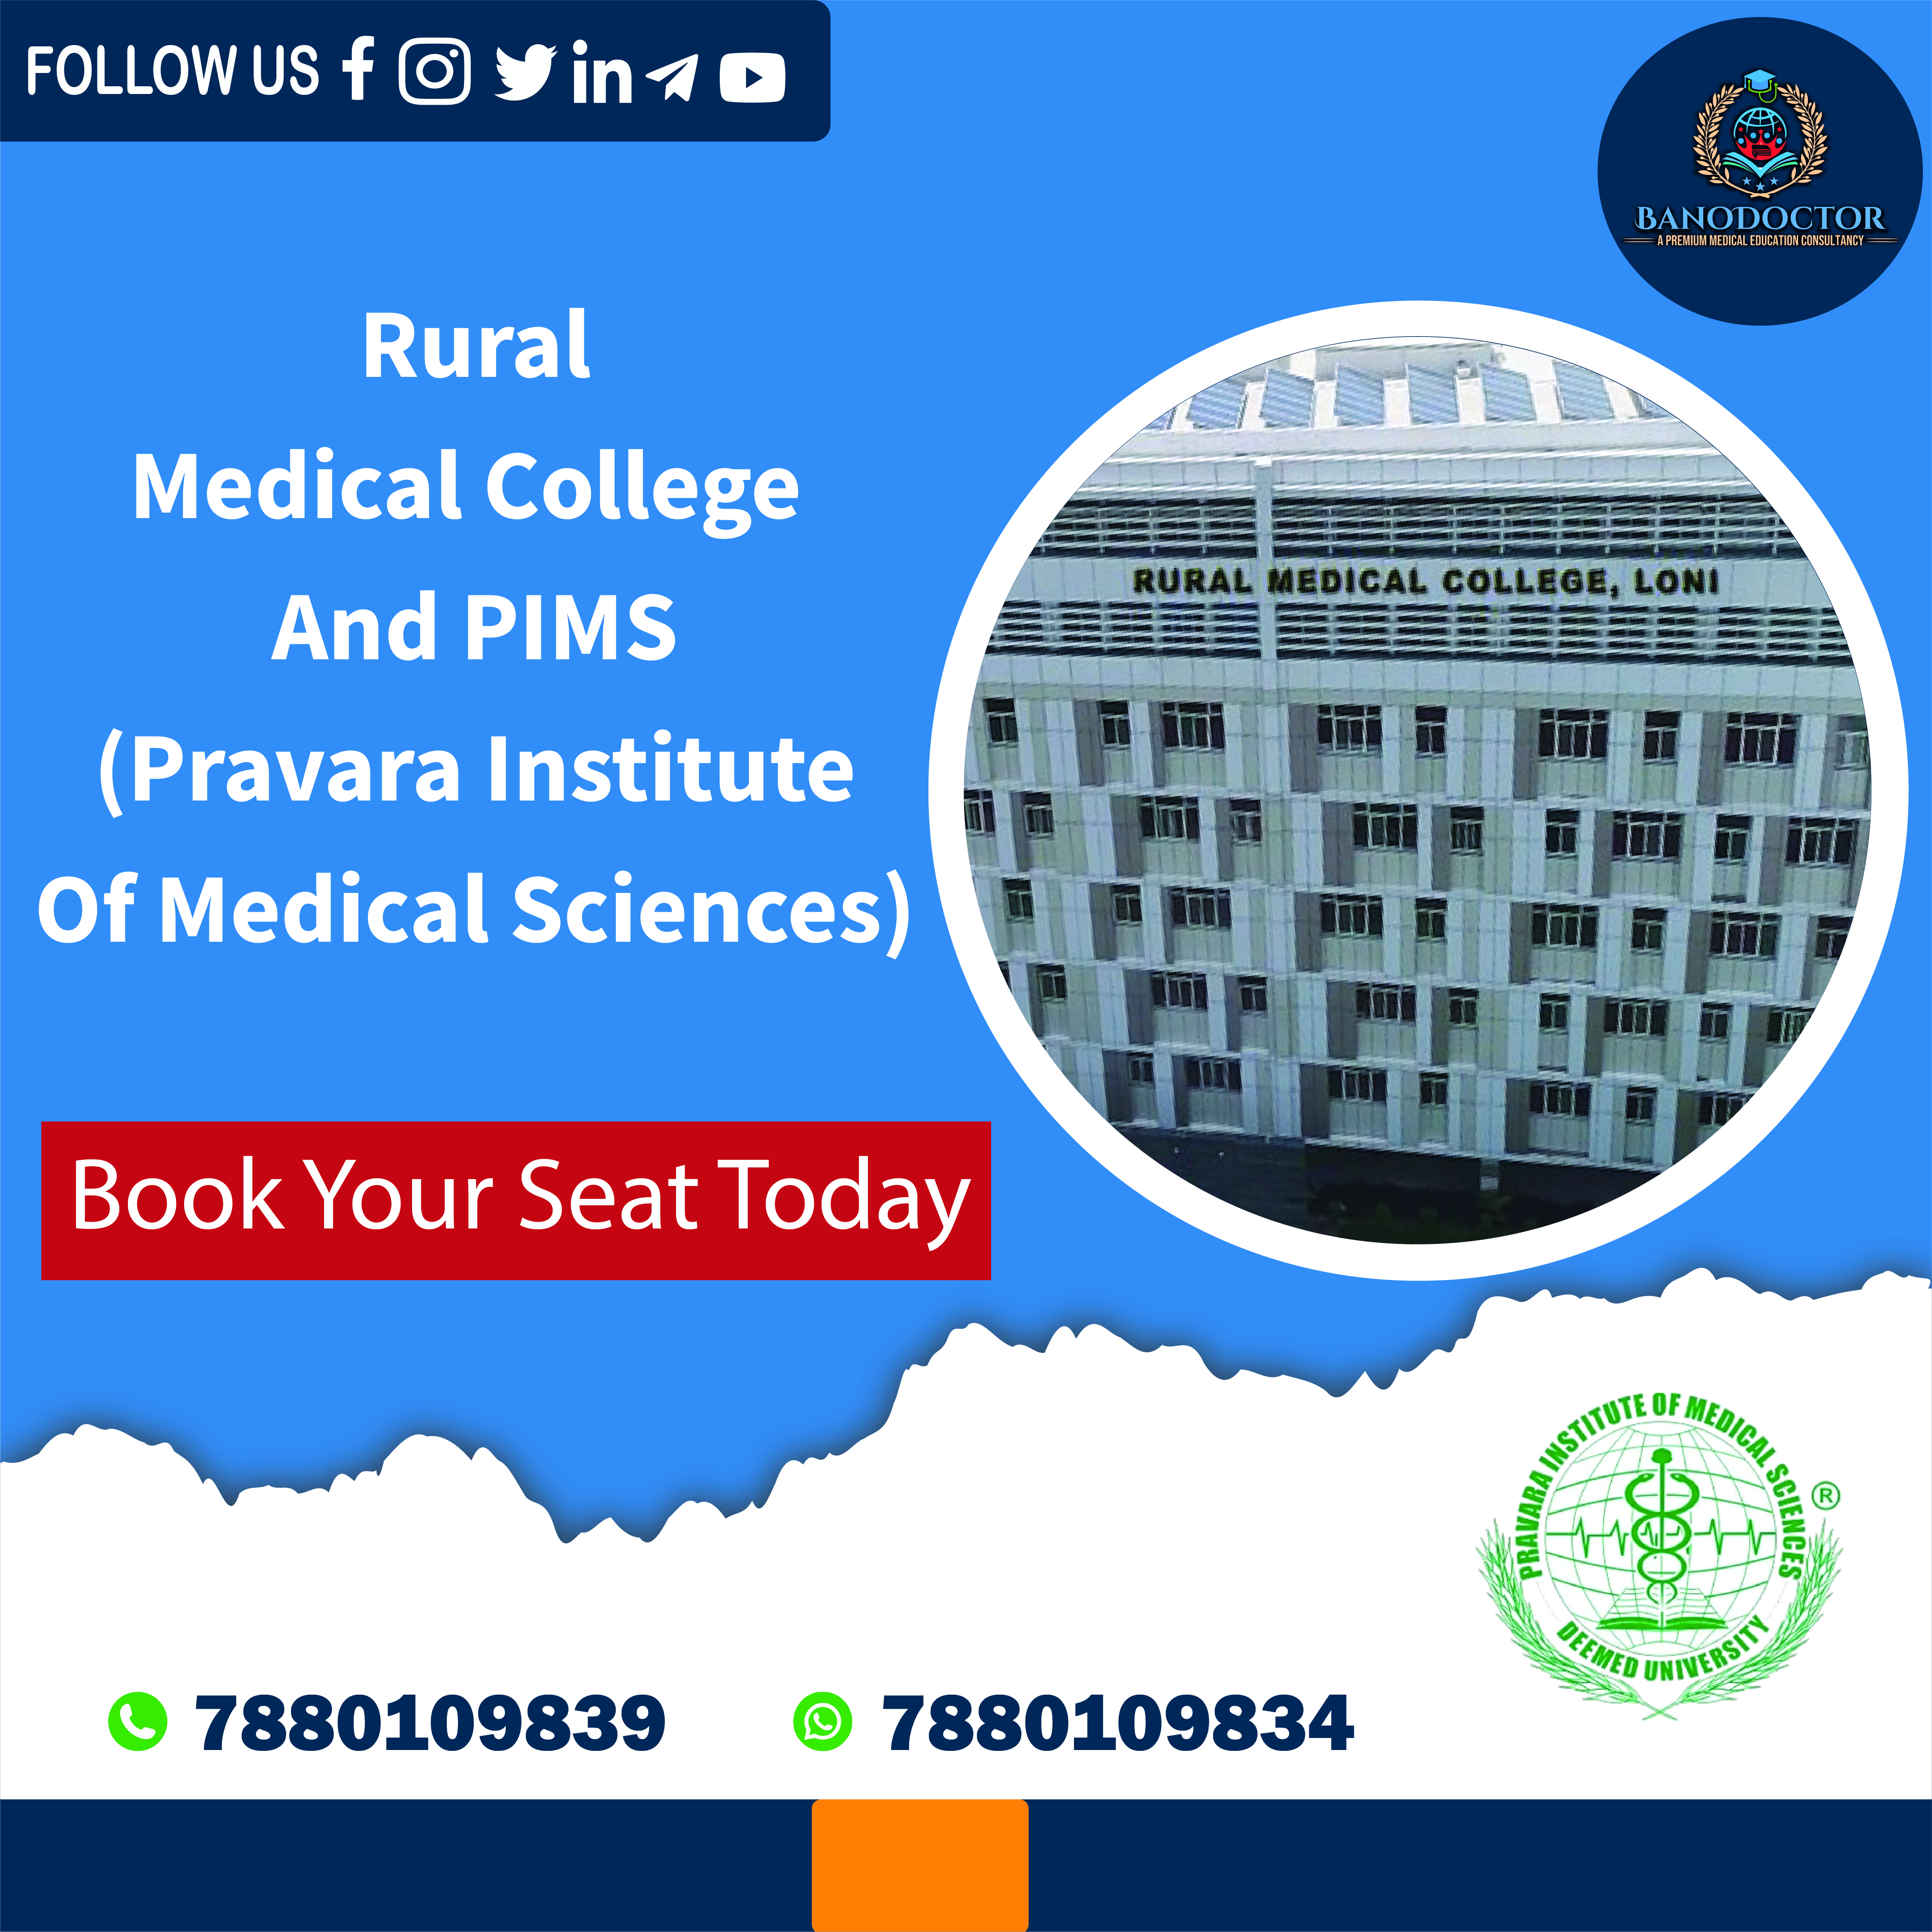 Sri Devaraj Urs Medical College (SDU), Kolar, Karnataka